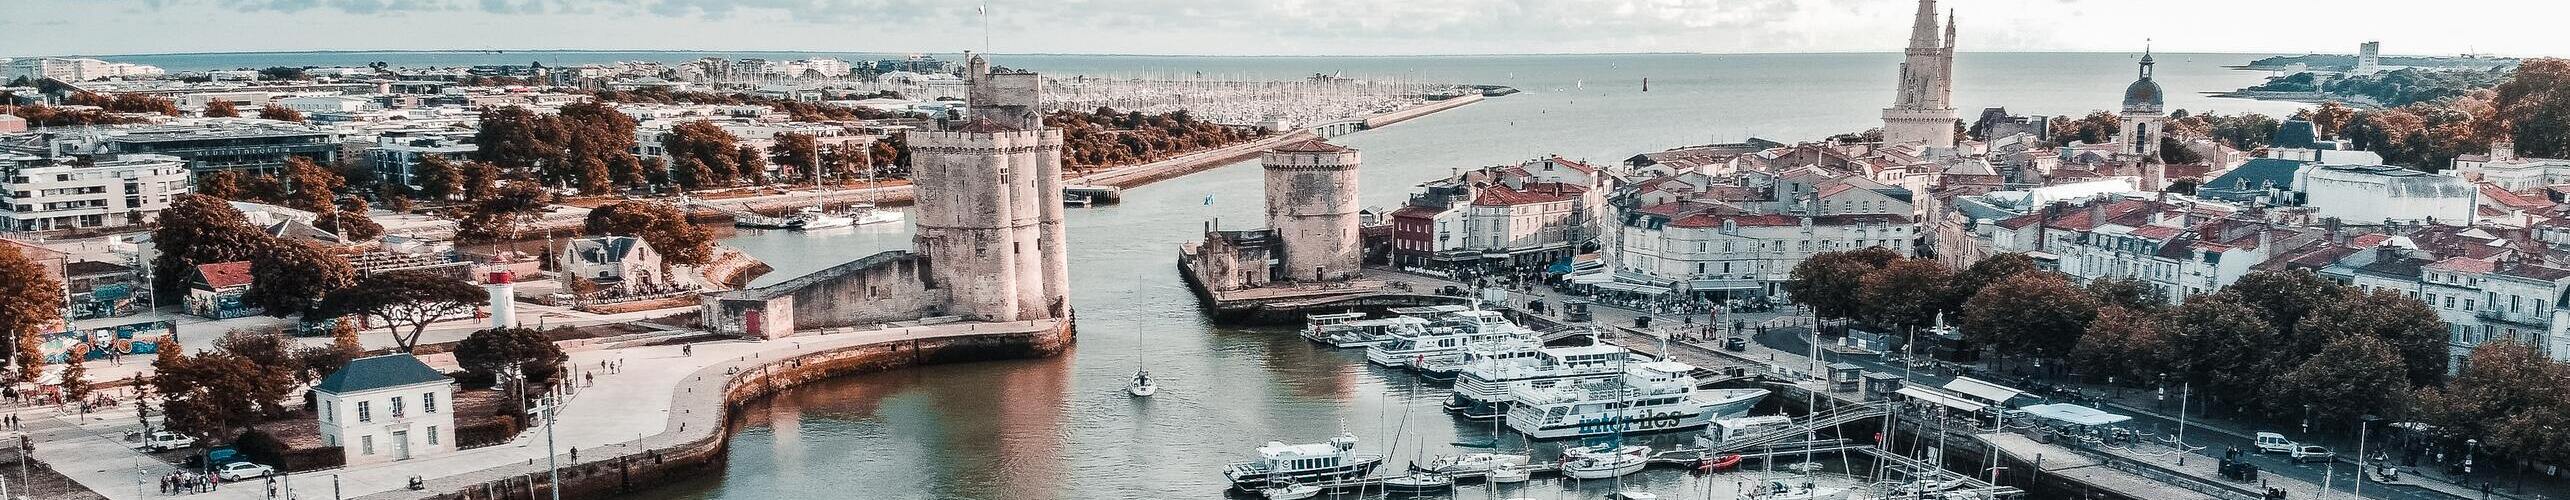 Vue panoramique du port de la Rochelle